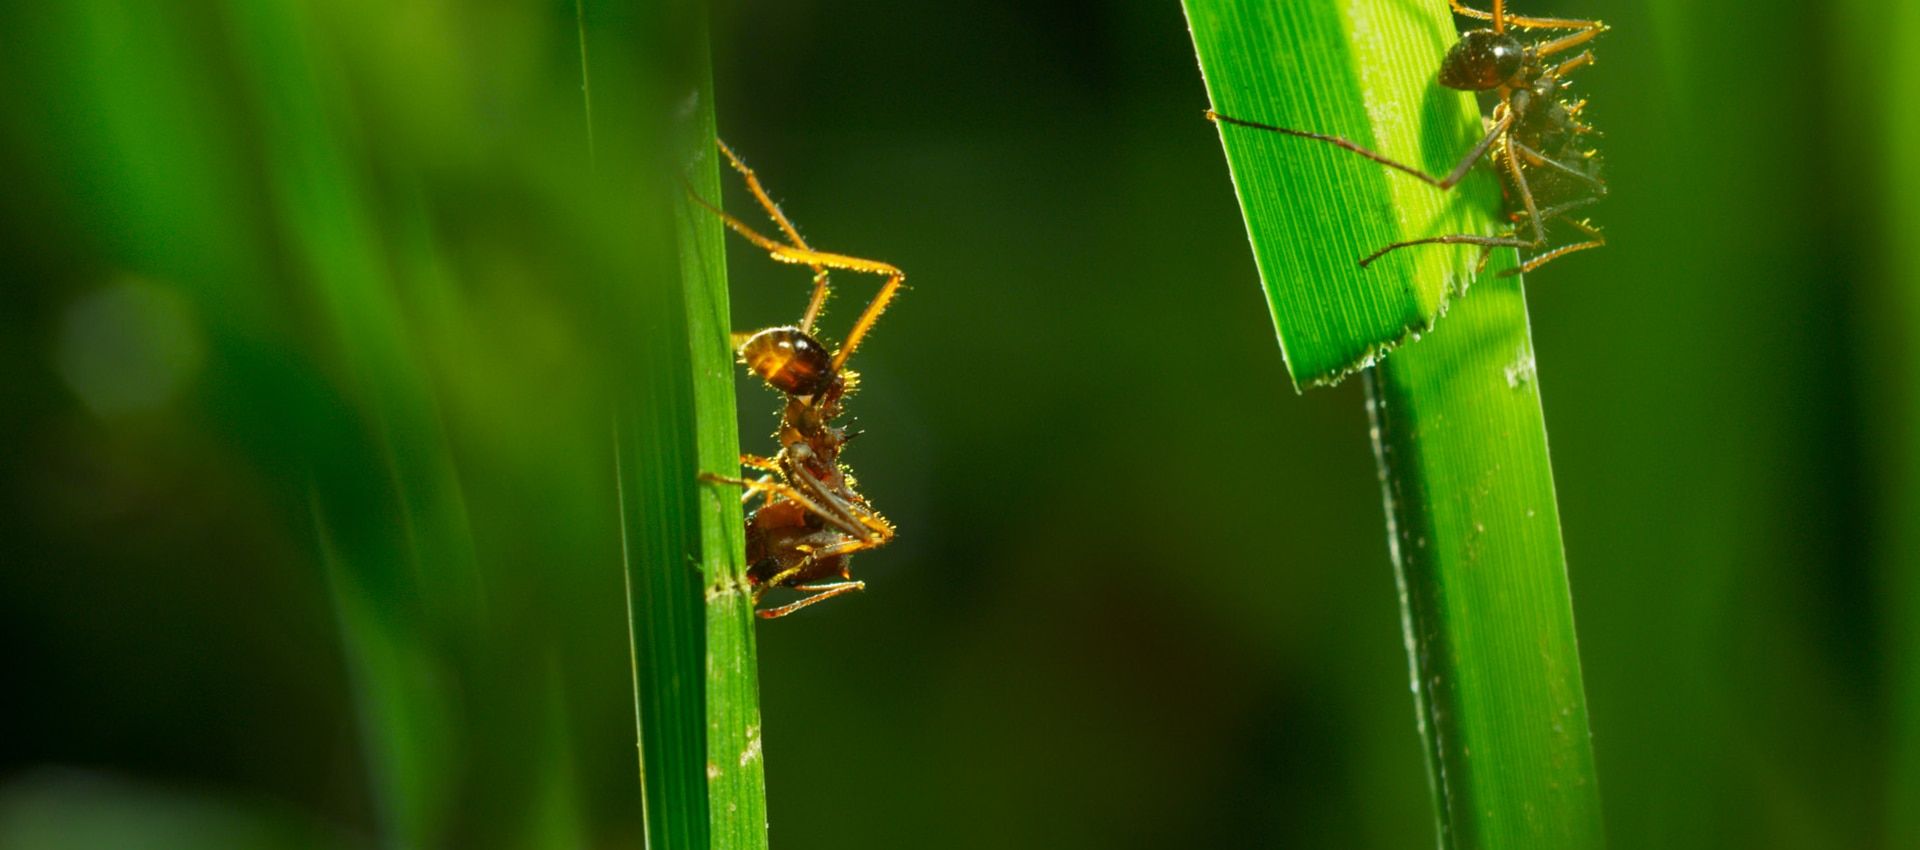 Ants climbing up a grass stem